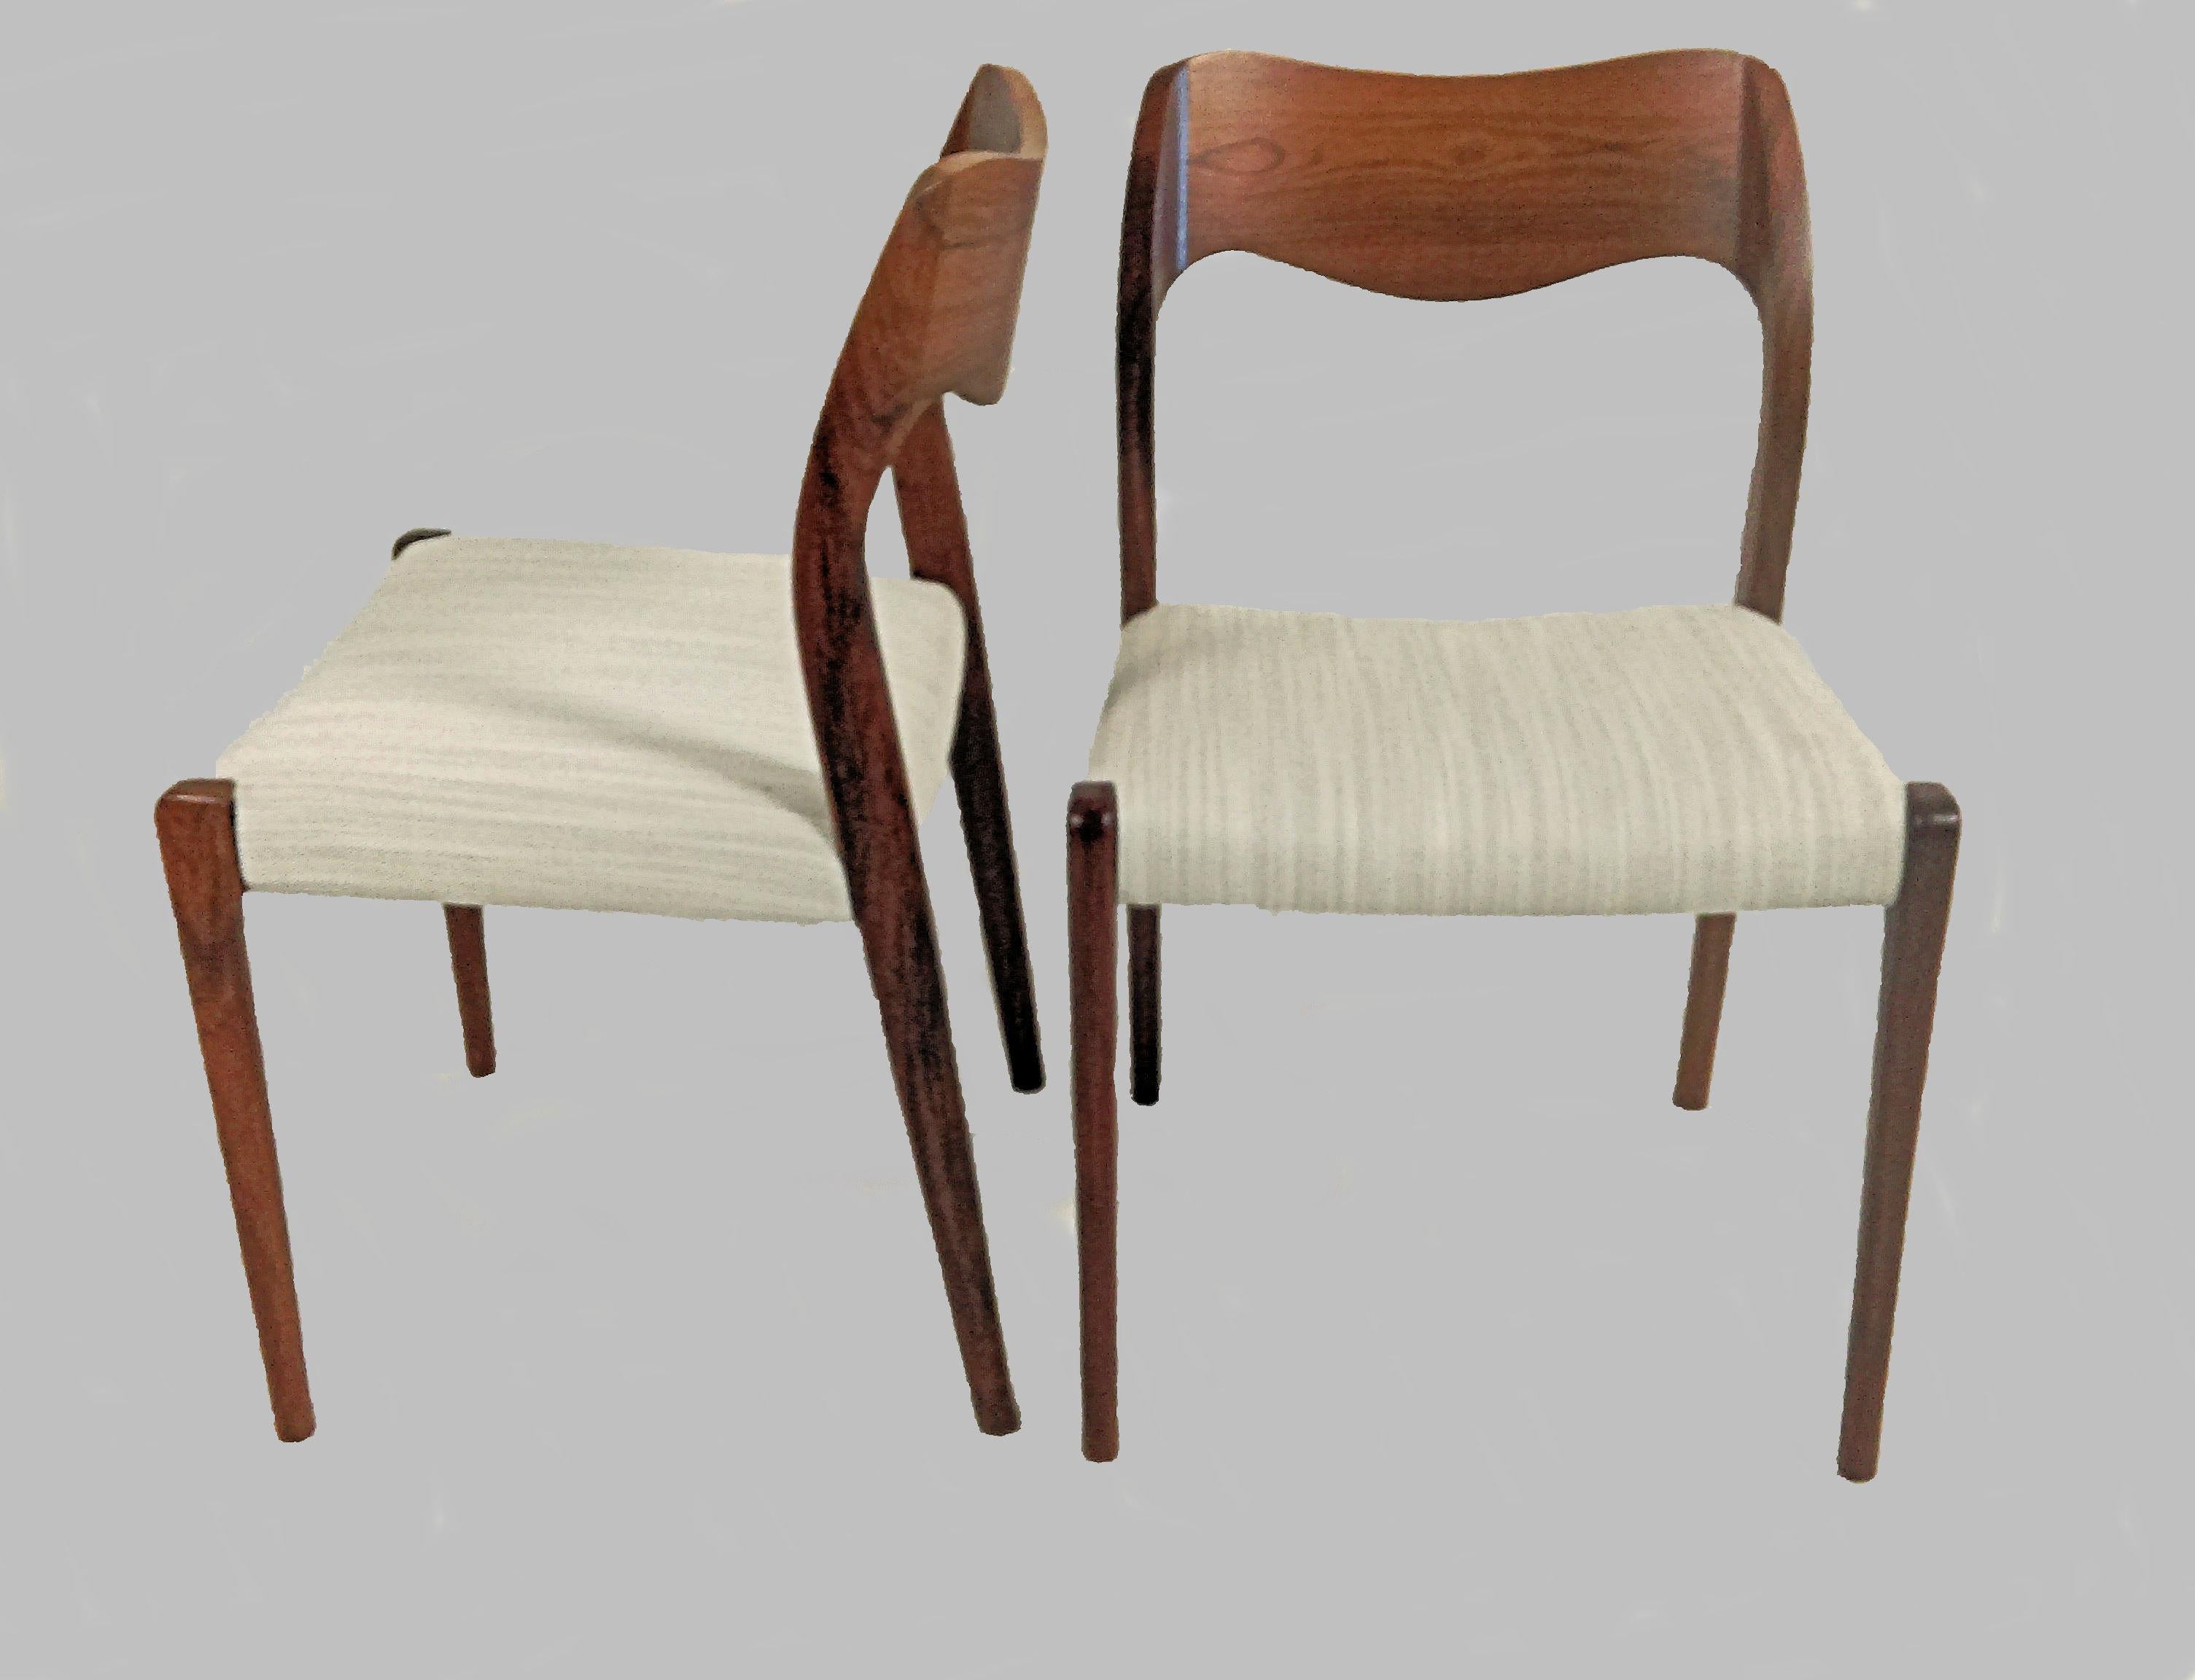 Satz von sechs Esszimmerstühlen Modell 71 aus Palisanderholz, entworfen von Niels Otto Møller im Jahr 1951.

Die Stühle haben einen massiven Rahmen und eine Rückenlehne aus Palisanderholz mit geraden Beinen und einer eleganten, organisch geformten